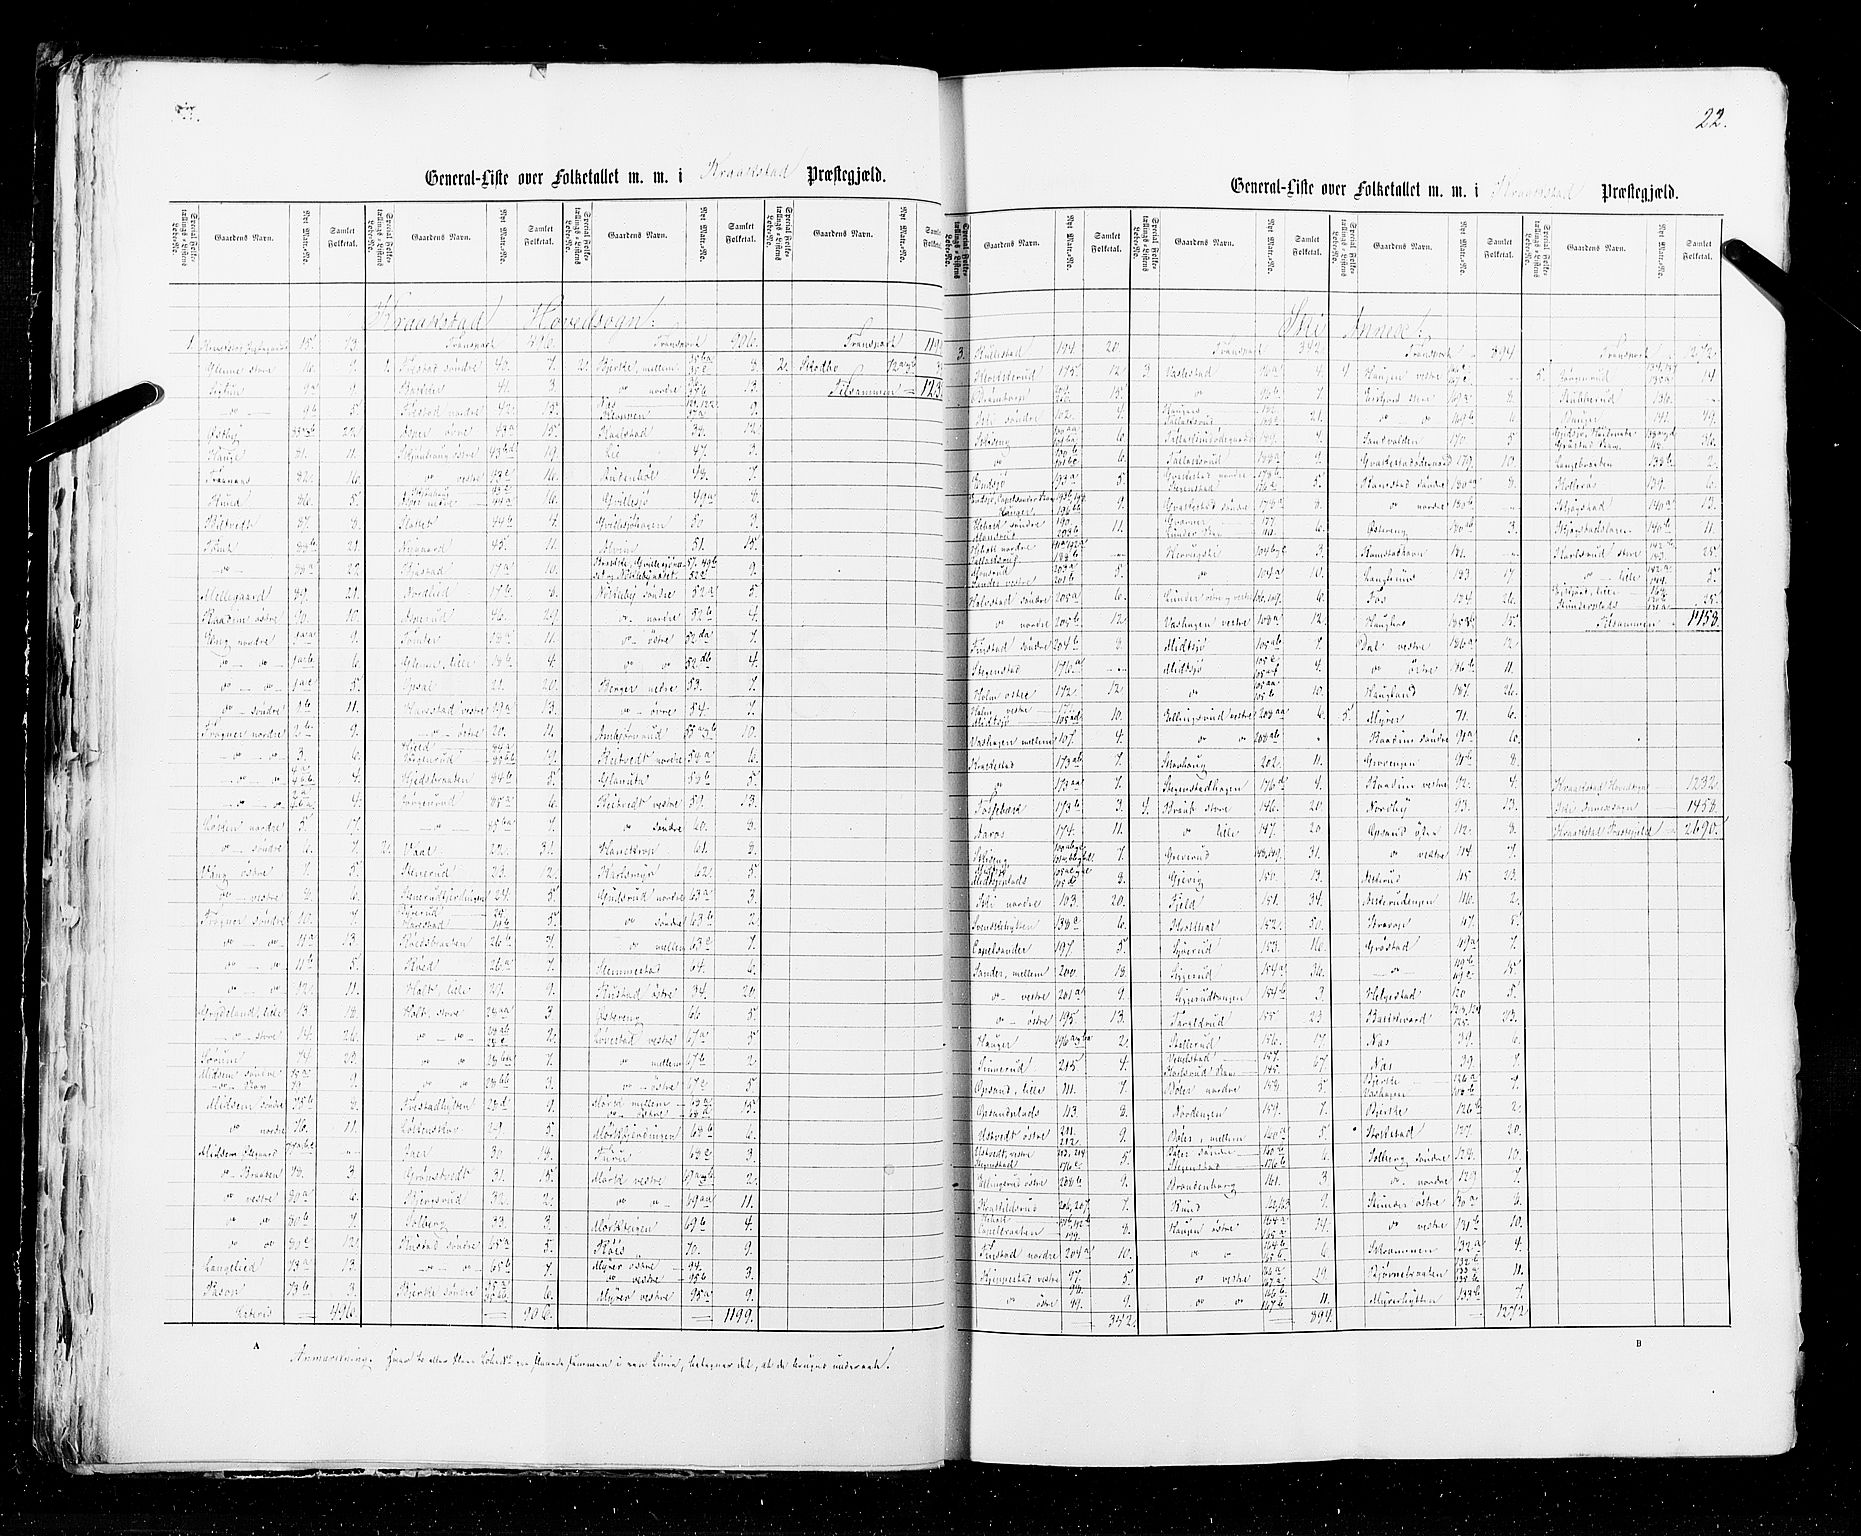 RA, Census 1855, vol. 1: Akershus amt, Smålenenes amt og Hedemarken amt, 1855, p. 22